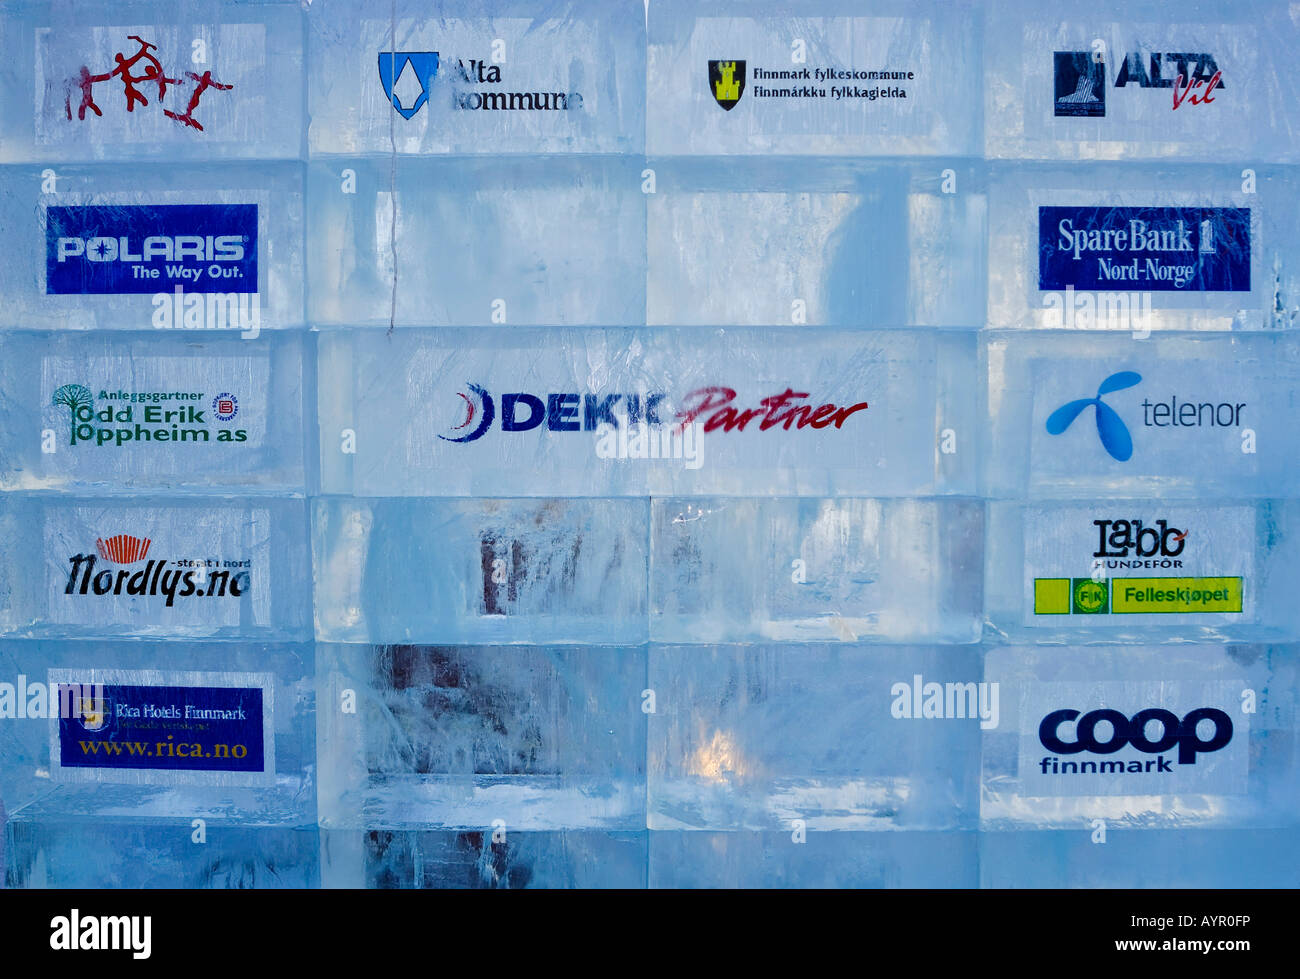 La publicité du promoteur dans des blocs de glace sur la ligne de départ de la course en traîneaux à chiens, Finnmarksloppet Finnmark, Norvège, Scandinavie Banque D'Images